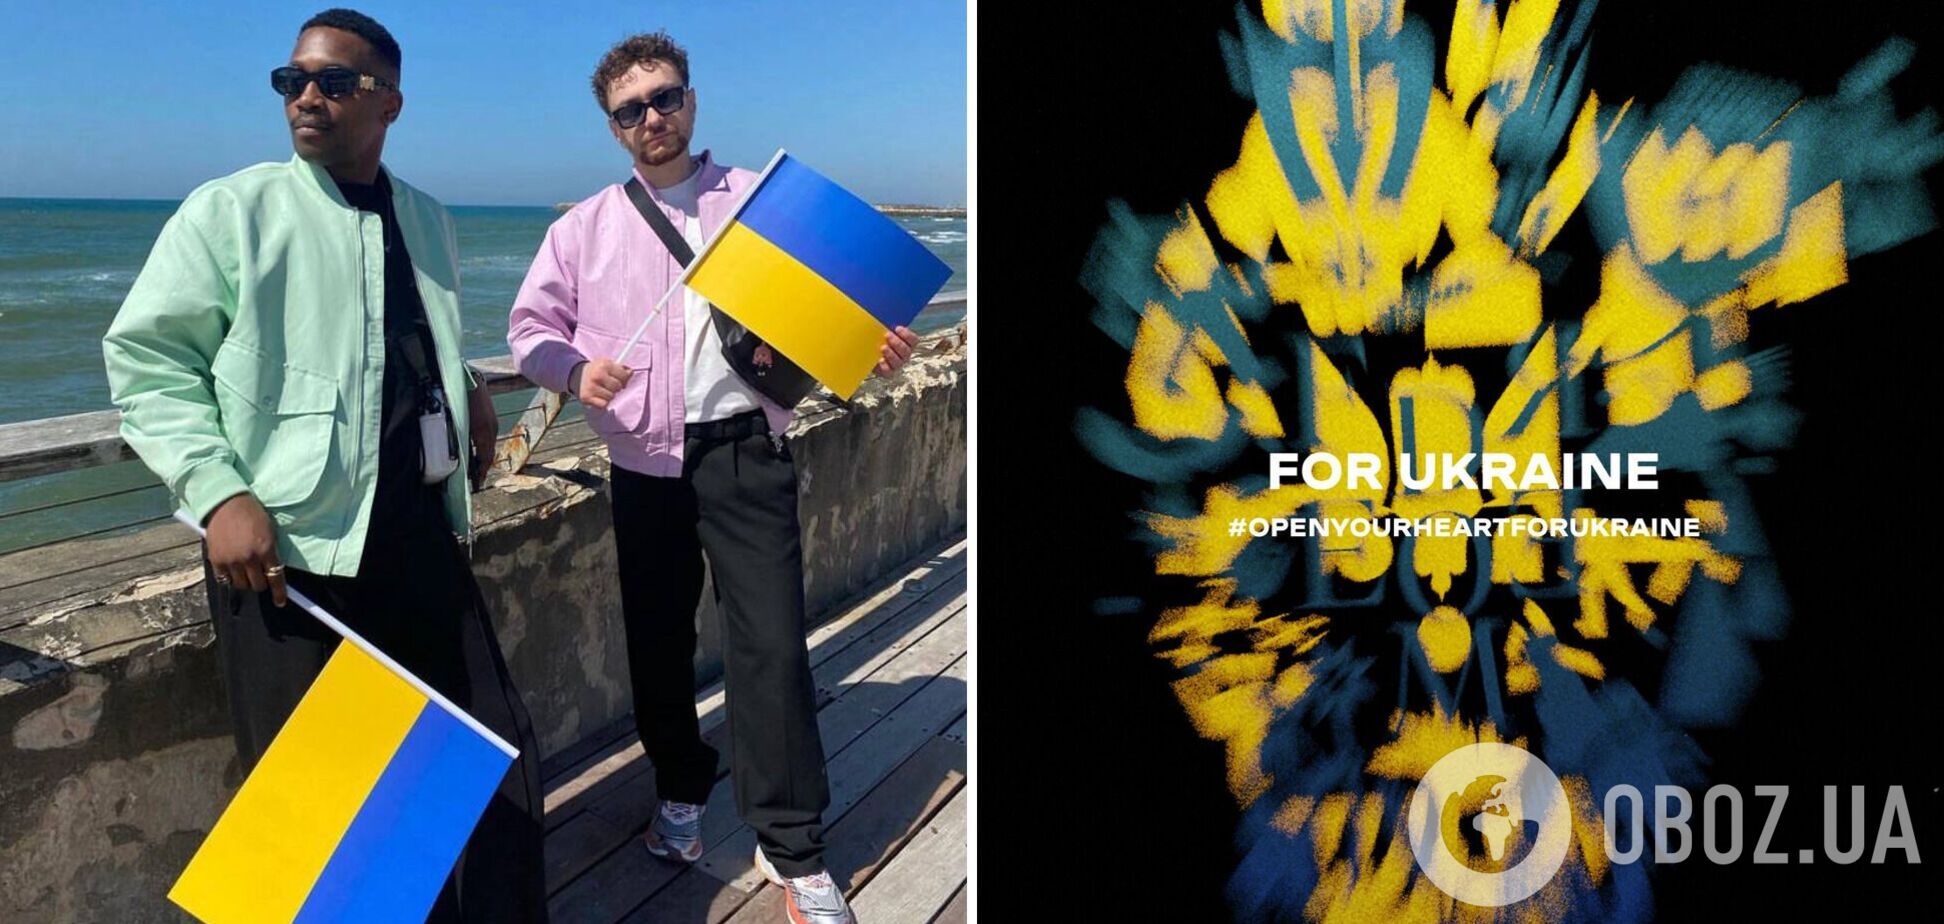 'Відкрийте серце для України': гурт TVORCHI вразив відео-маніфестом про 'дух мужності та опору'